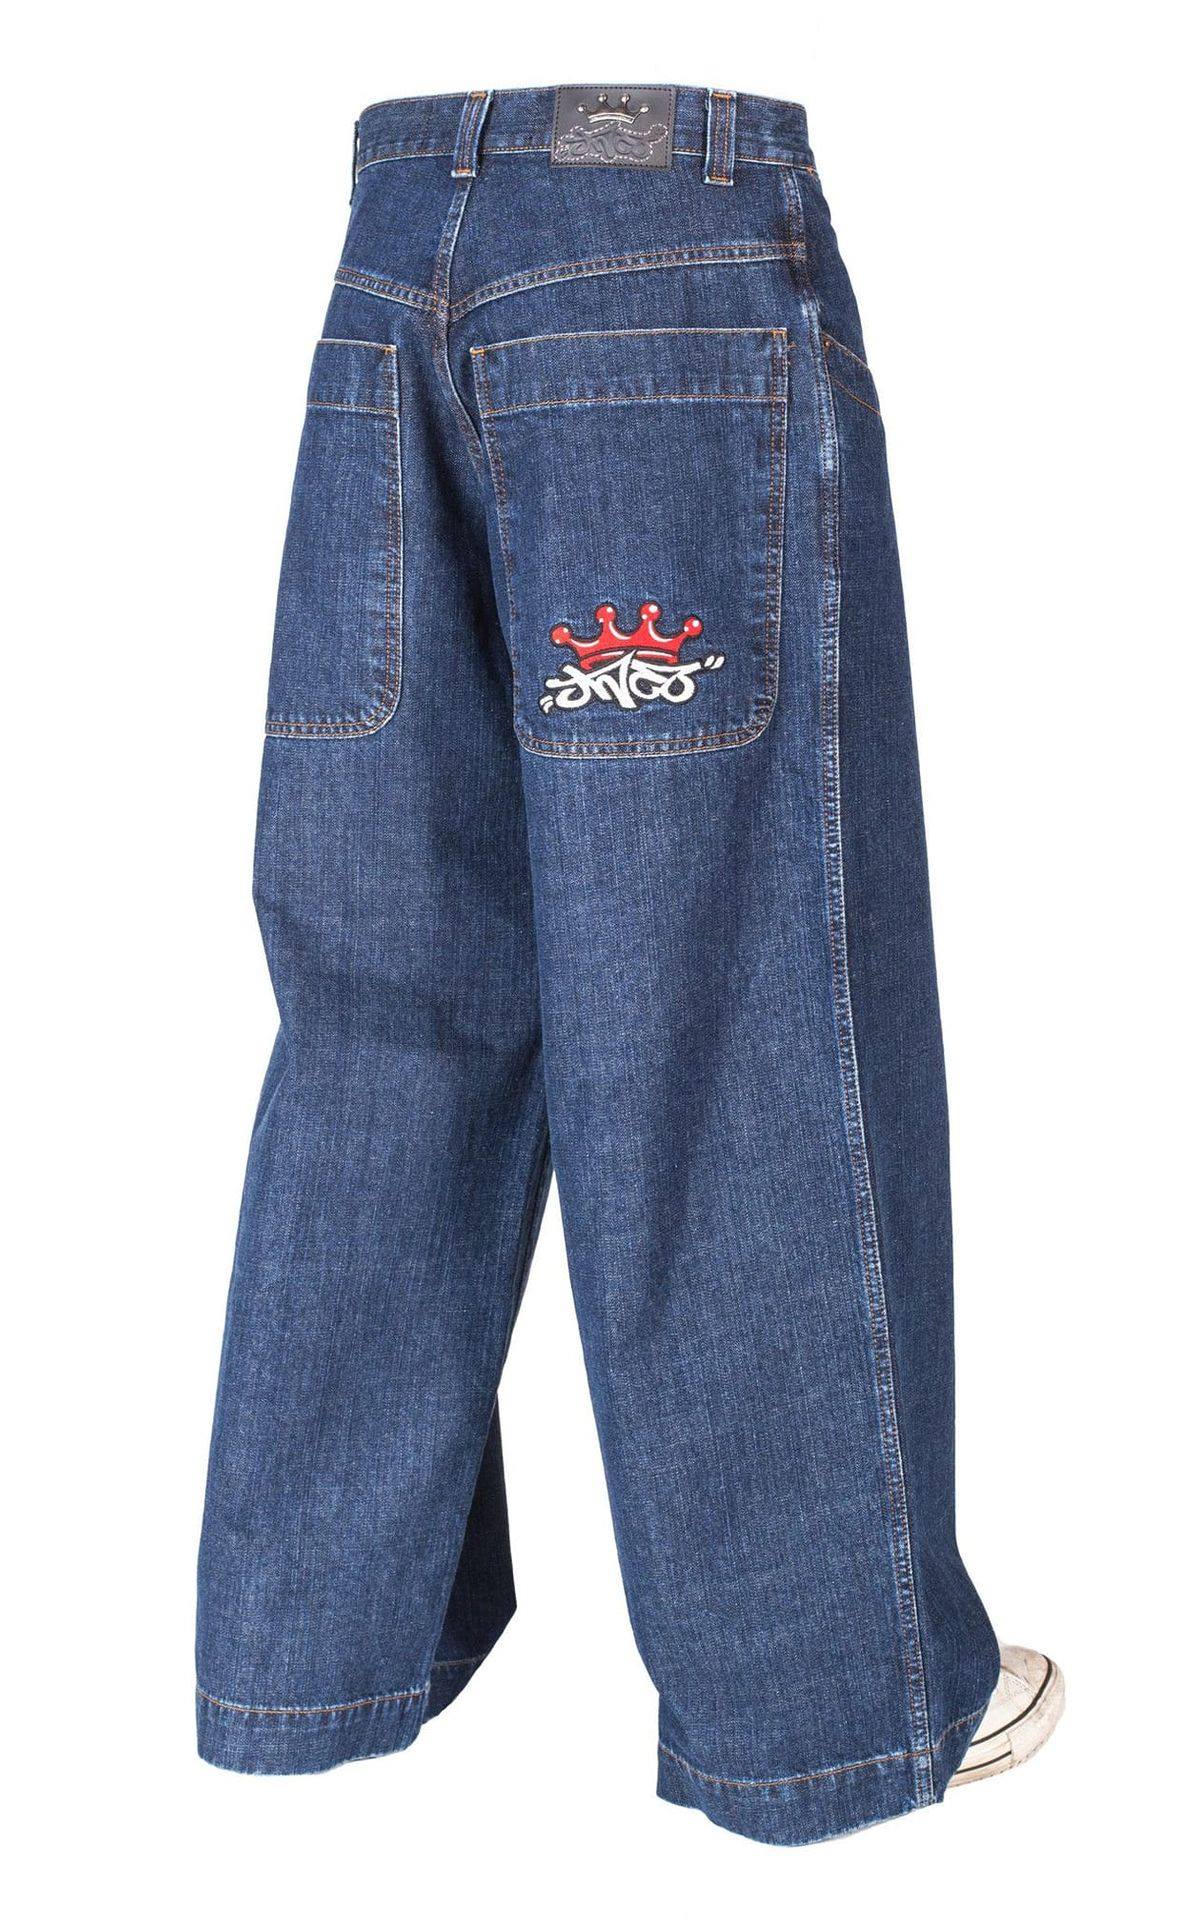 nostalgia - 90's jnco jeans